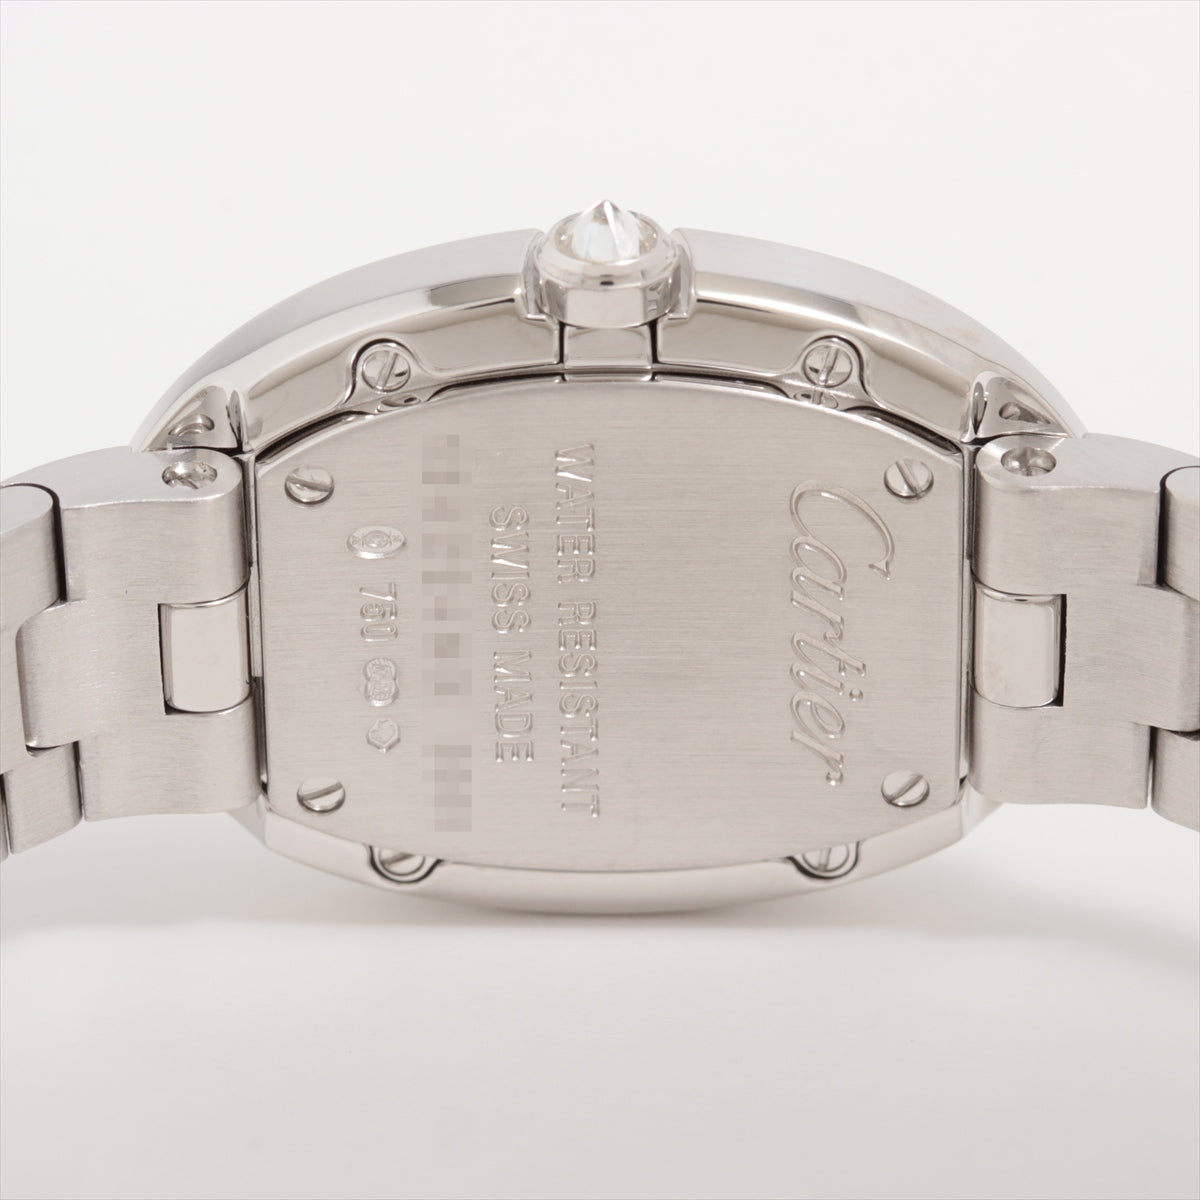 Cartier Benuval SM WB520006 WG QZ Silver Character 沛納海 2 小時耐力腕表